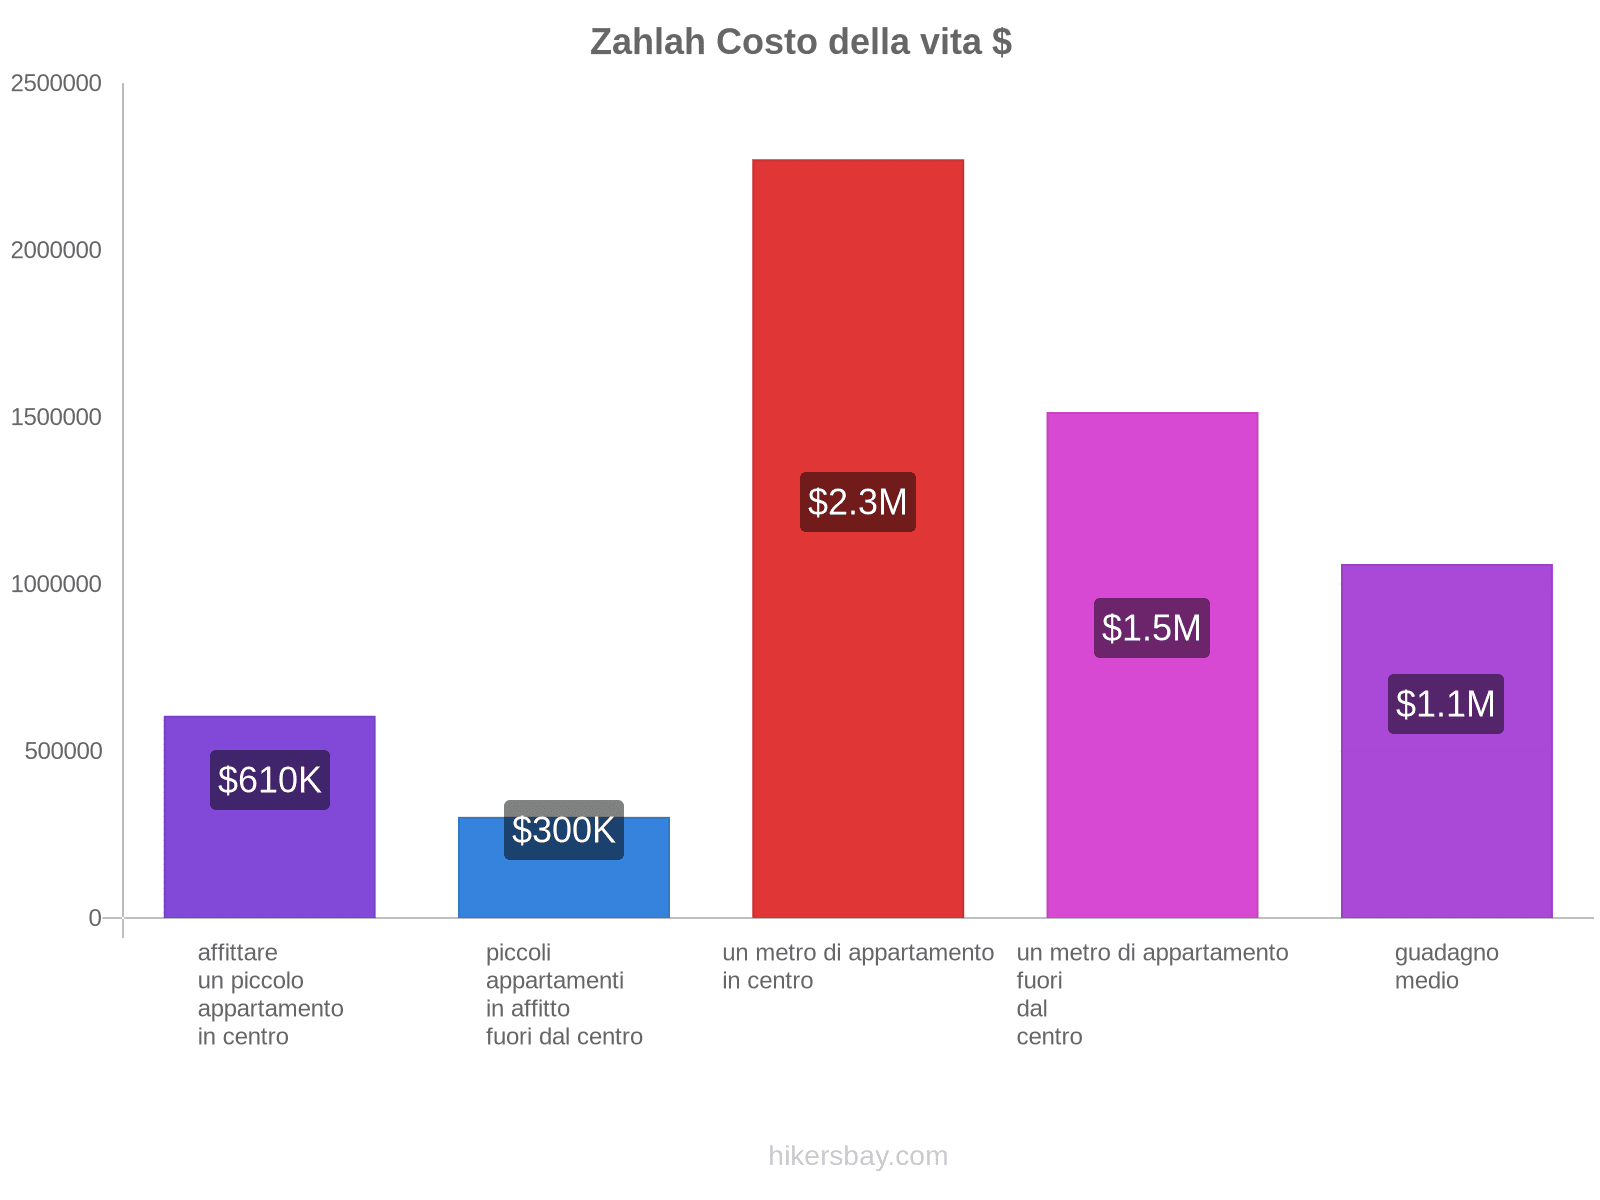 Zahlah costo della vita hikersbay.com